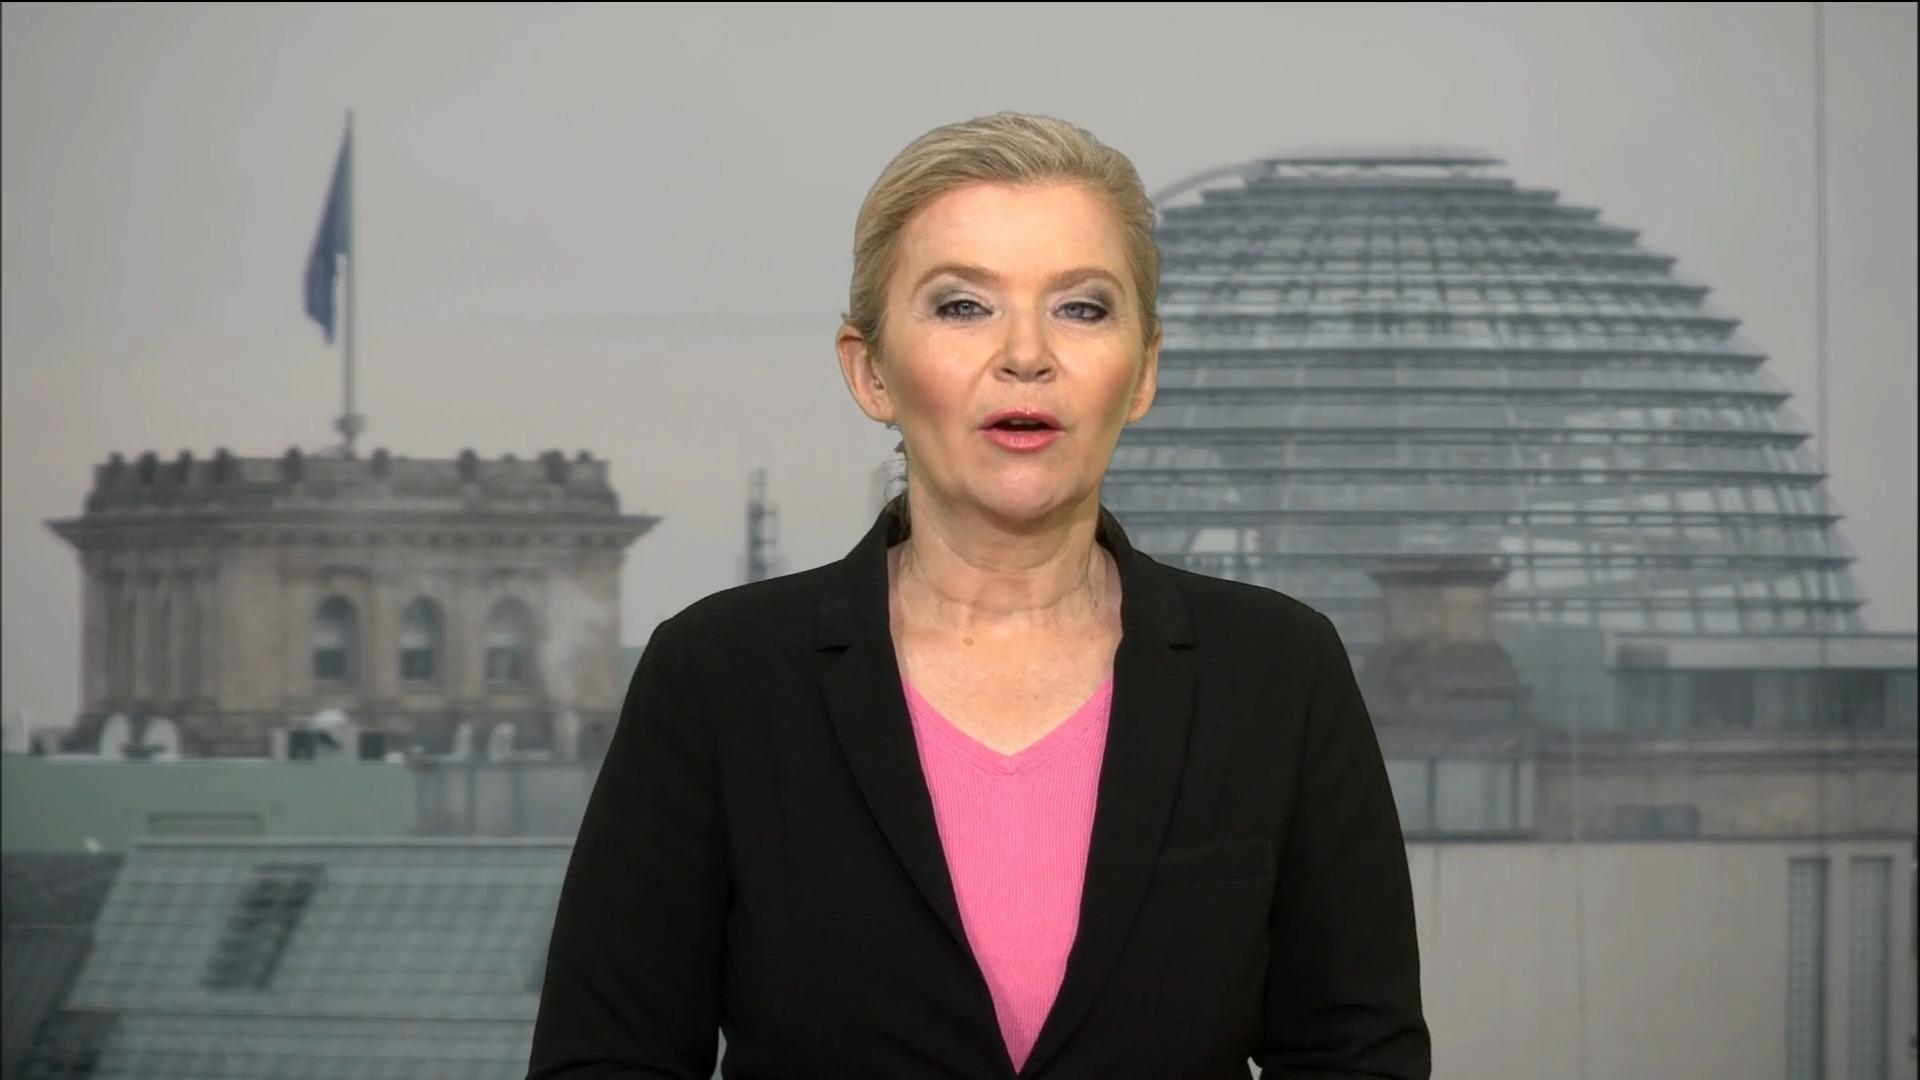 "Auch nach dem Scholz-Besuch wird's kritische Stimme geben" Heike Boese in Berlin